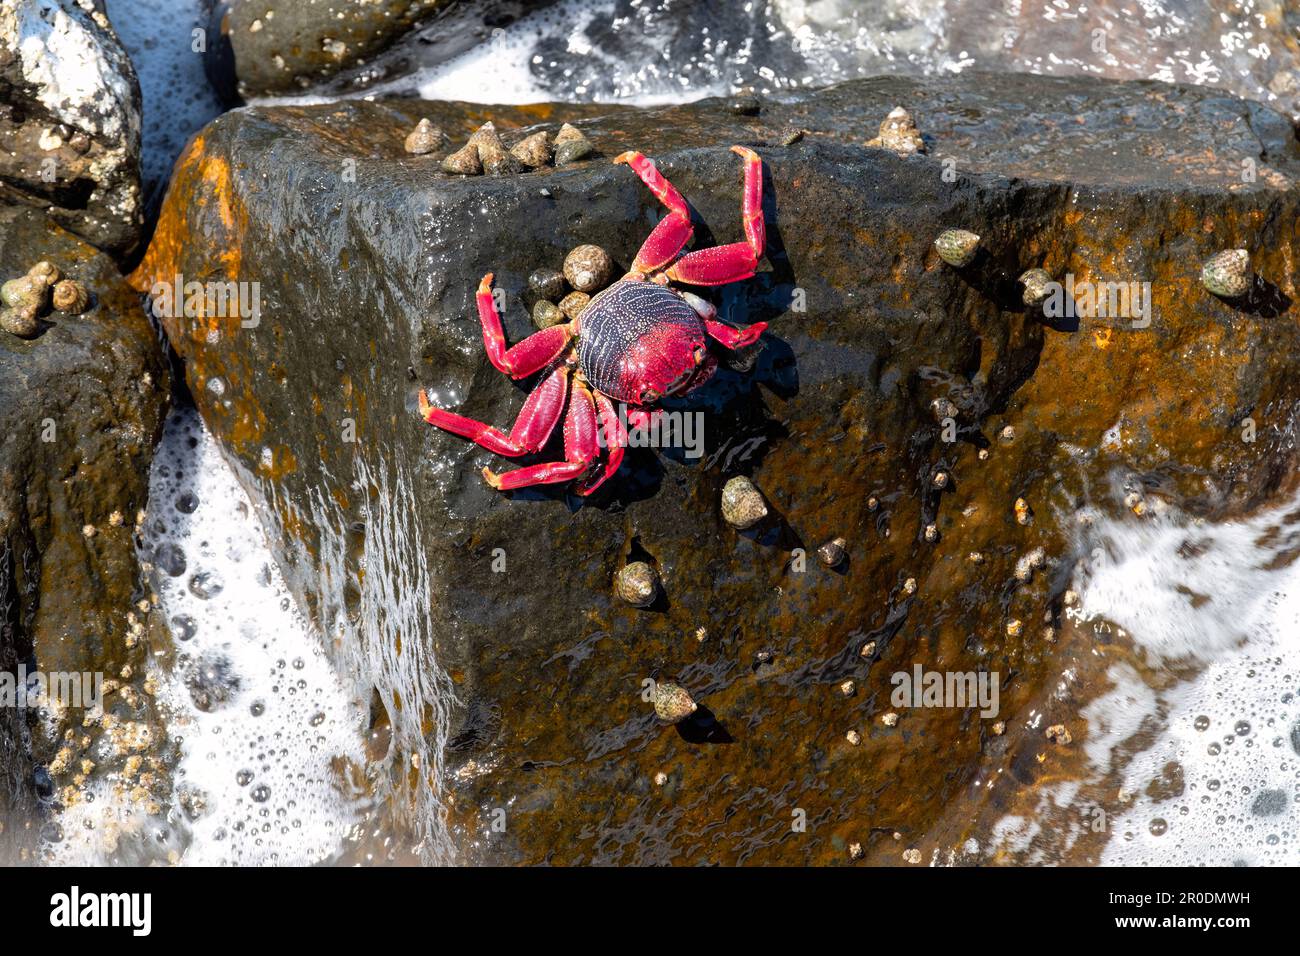 Un seul adulte de l'Atlantique Nord Red Rock Crab Grapsus adscensionis indigène aux côtes tropicales de l'Atlantique est, y compris les îles canaries Banque D'Images